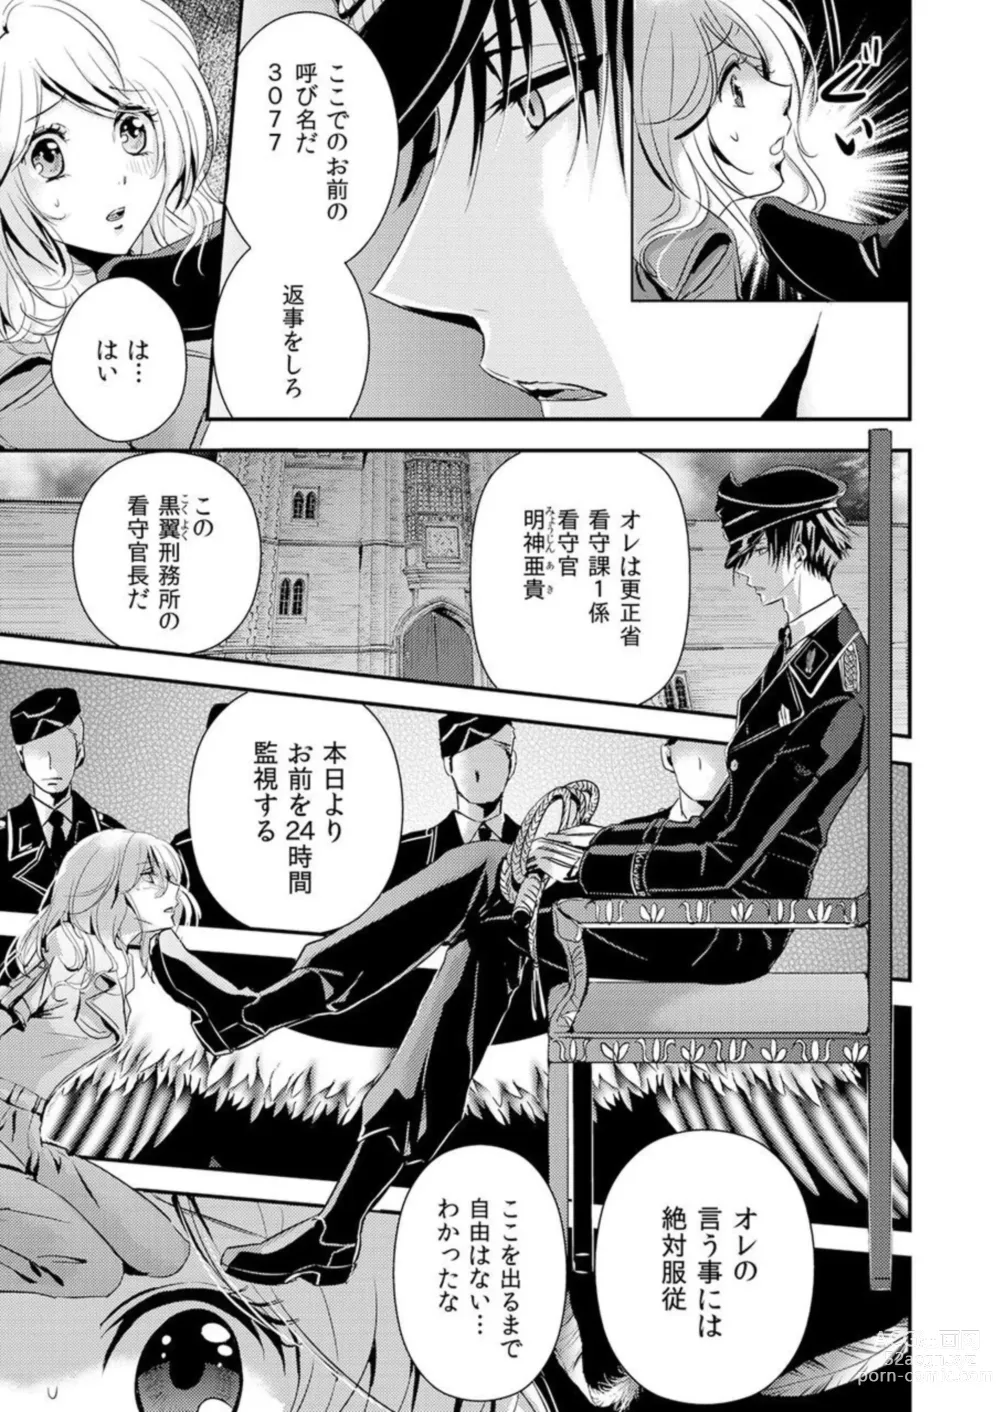 Page 7 of manga Kono Mama ja... Iku...